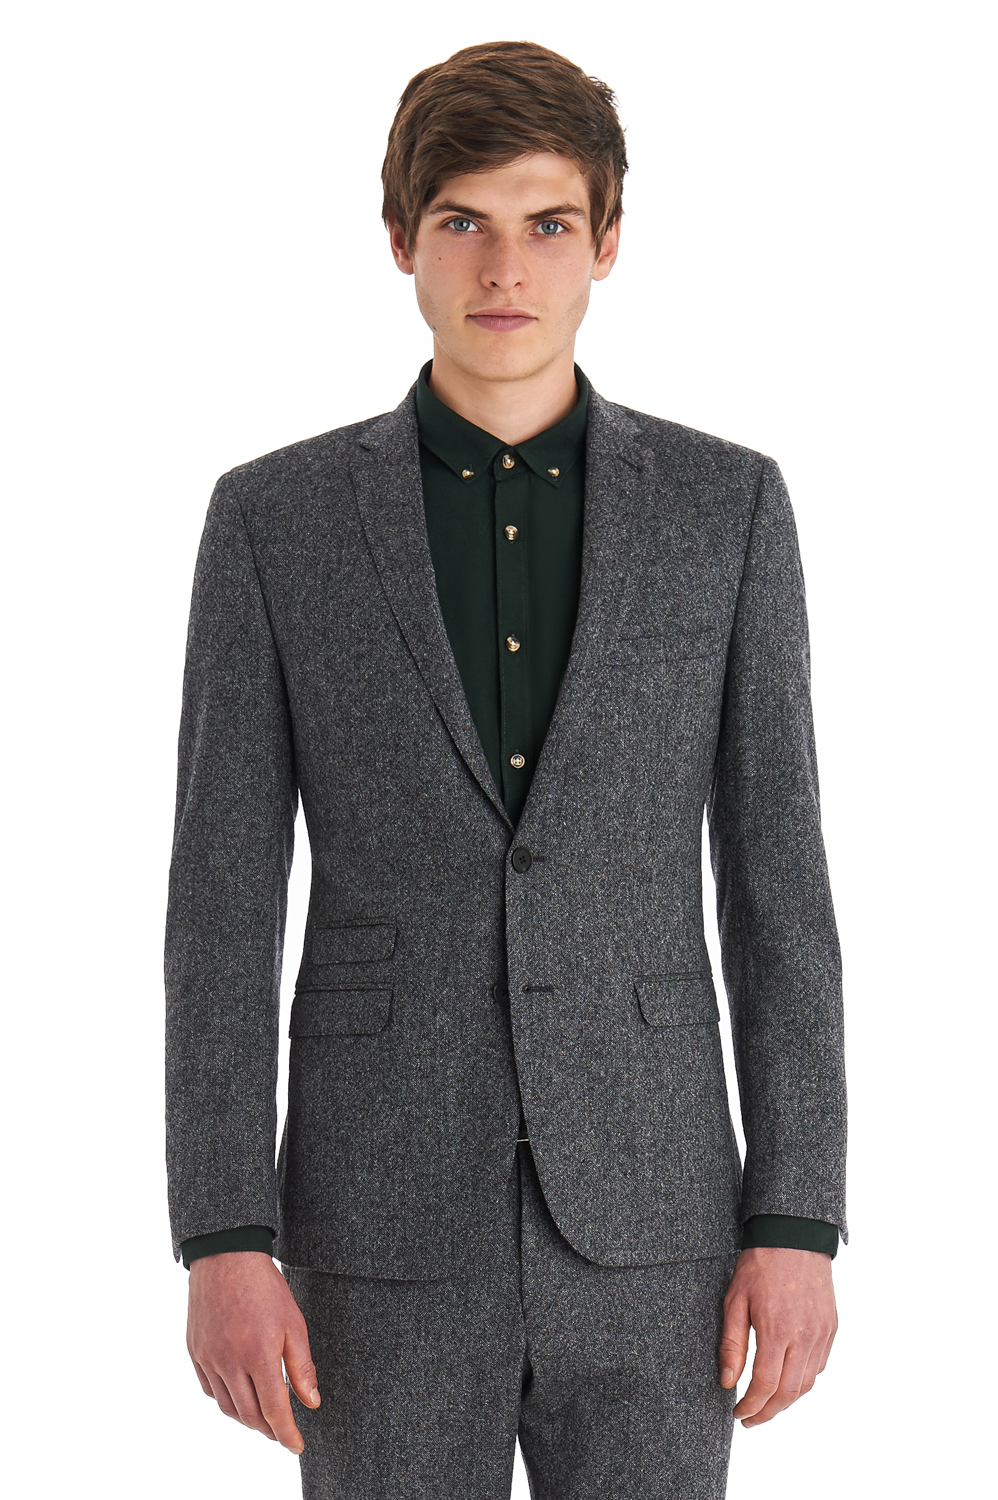 Tweed Jackets – Jackets